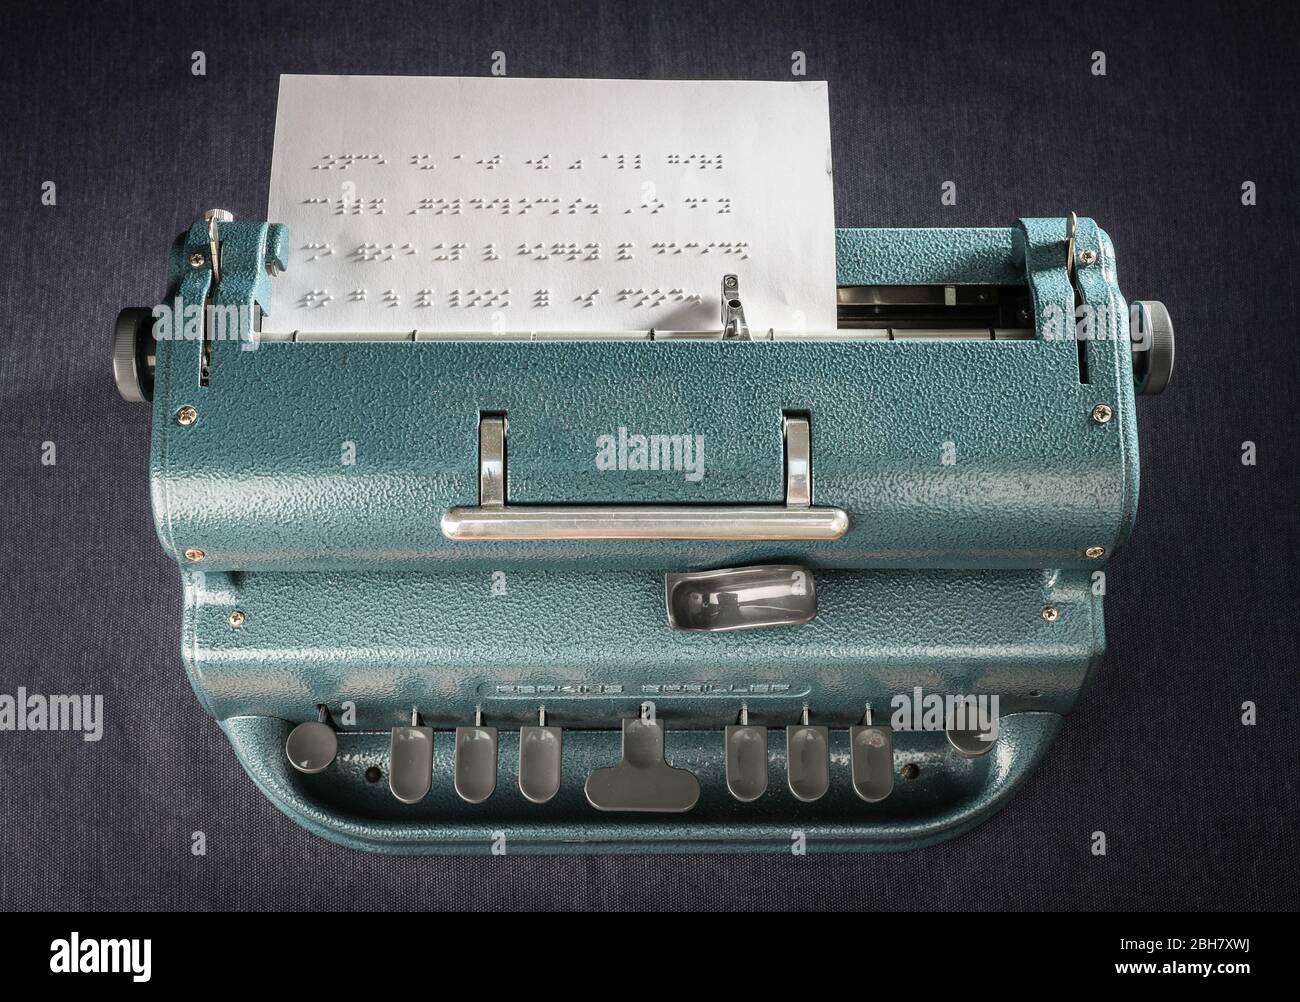 Machine à écrire Brailler Perkins. Banque D'Images